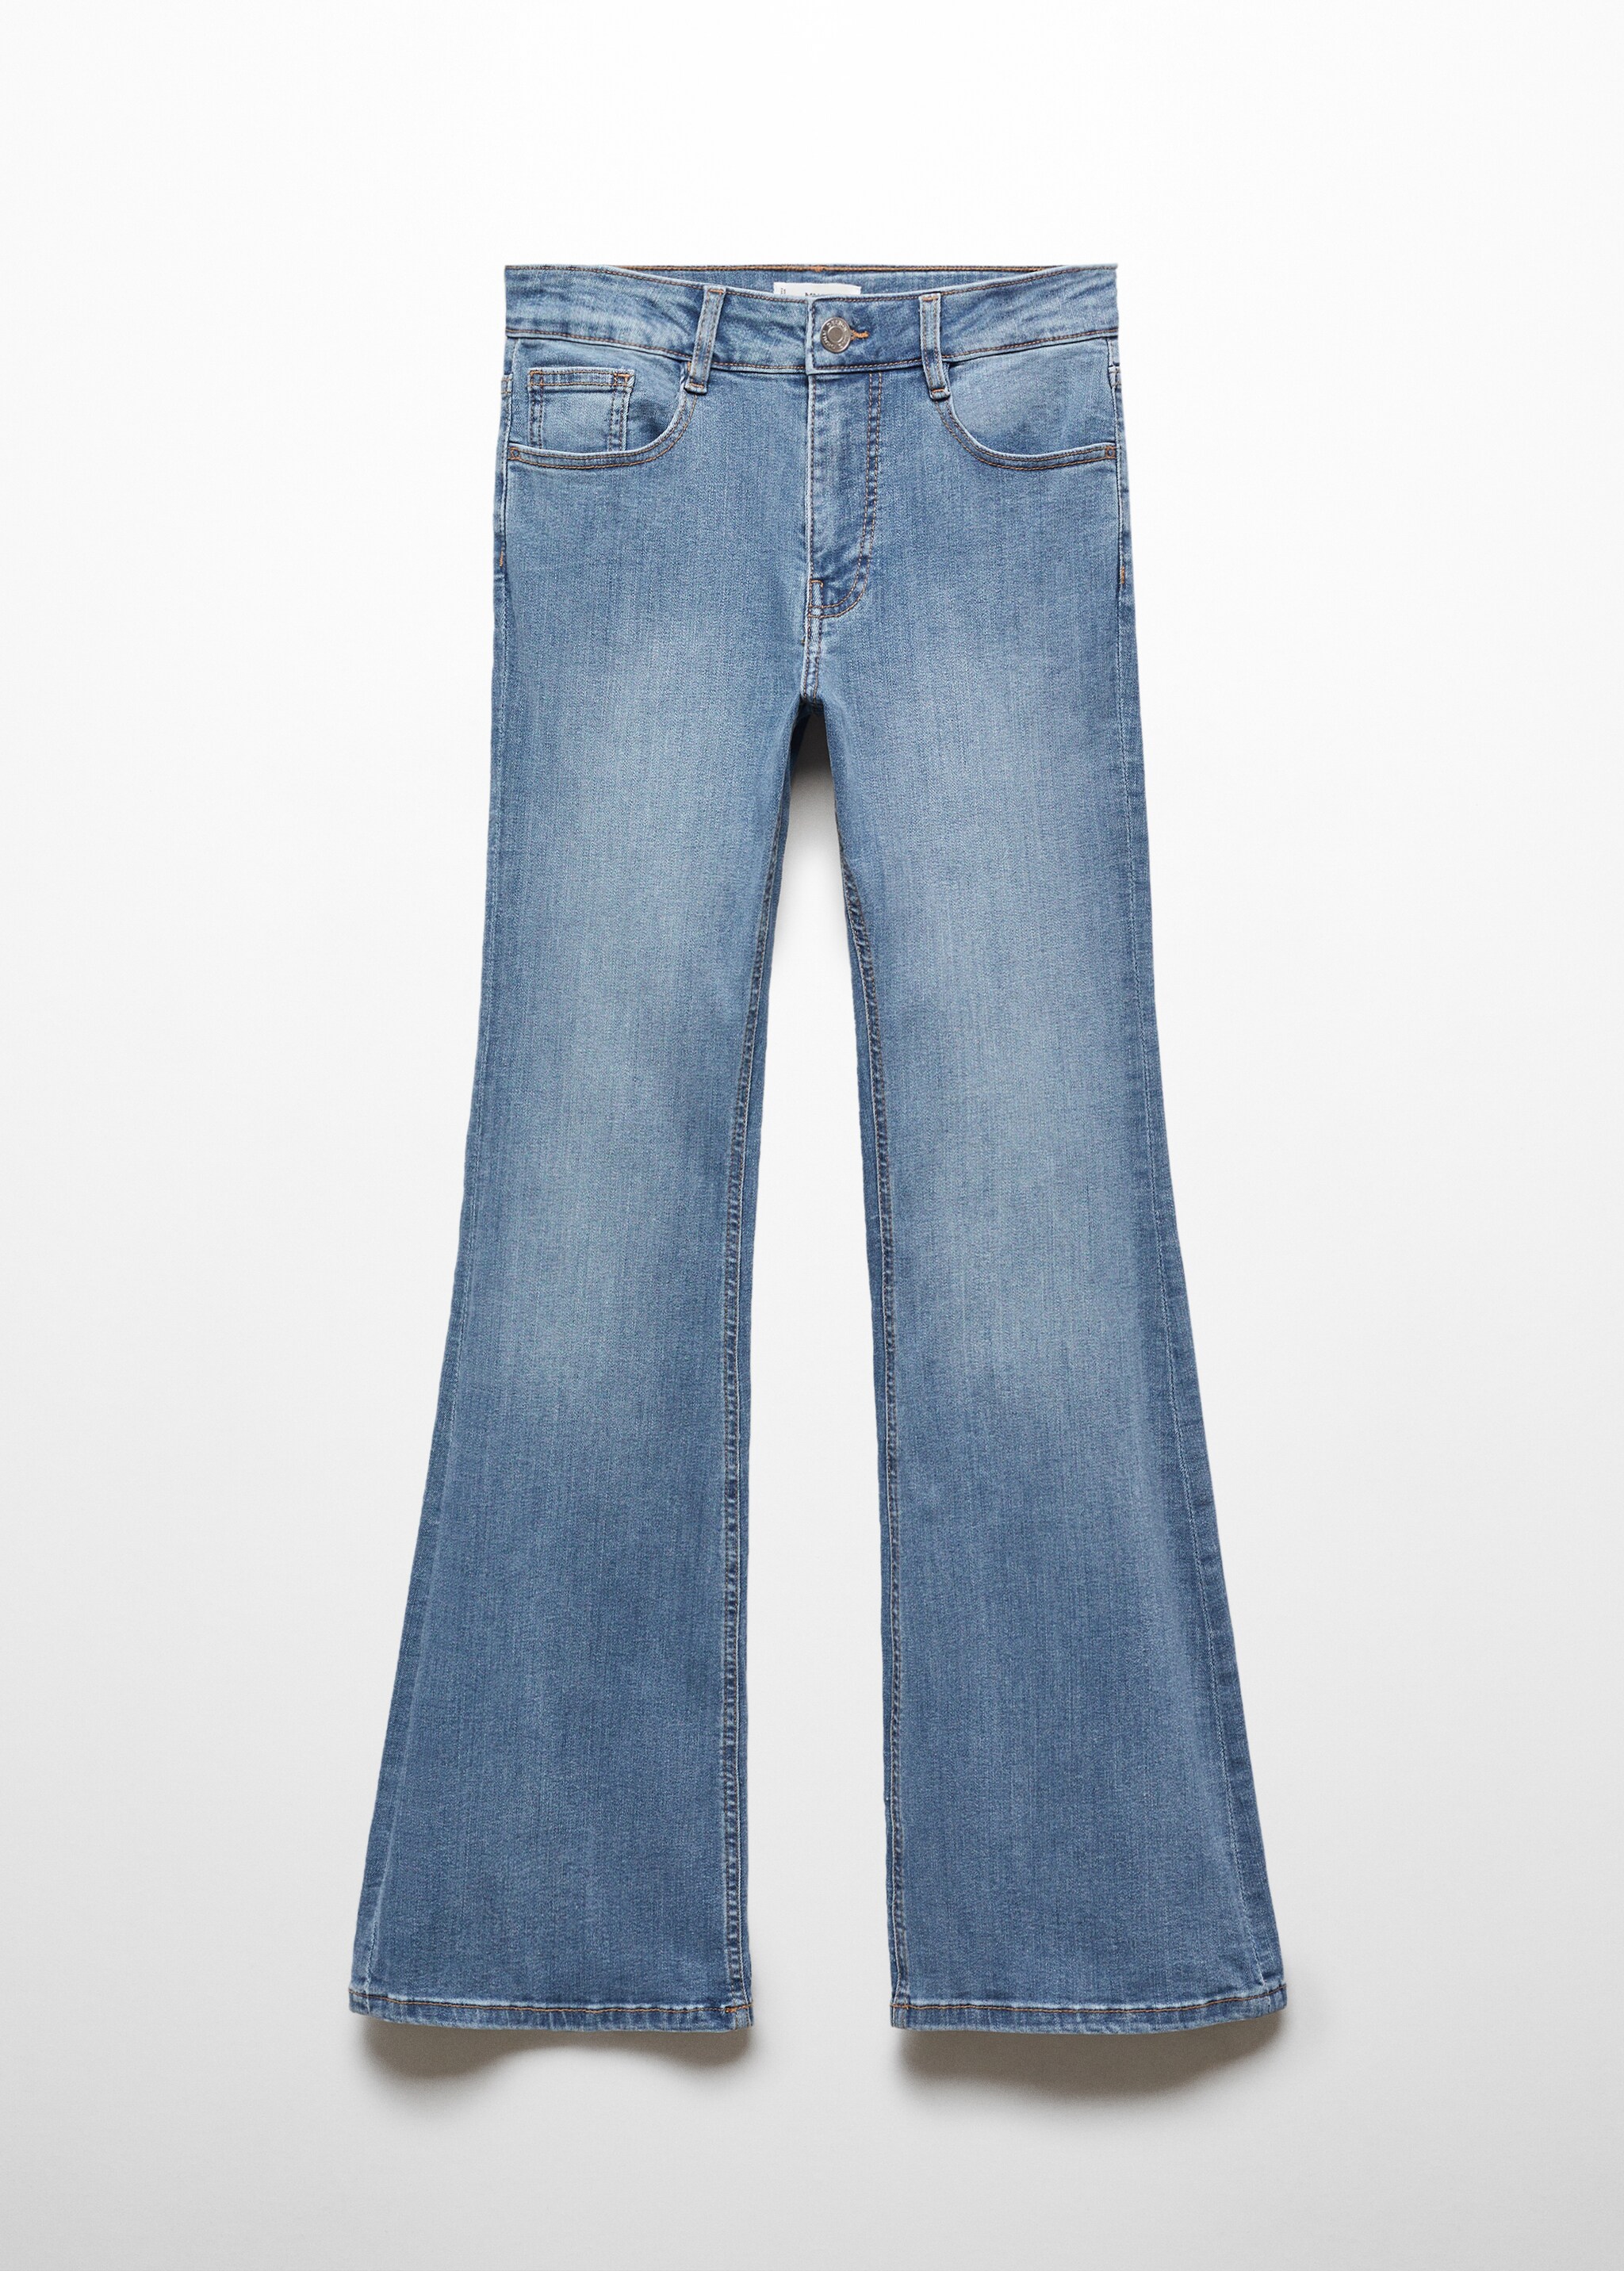 Jeans flare - Artículo sin modelo